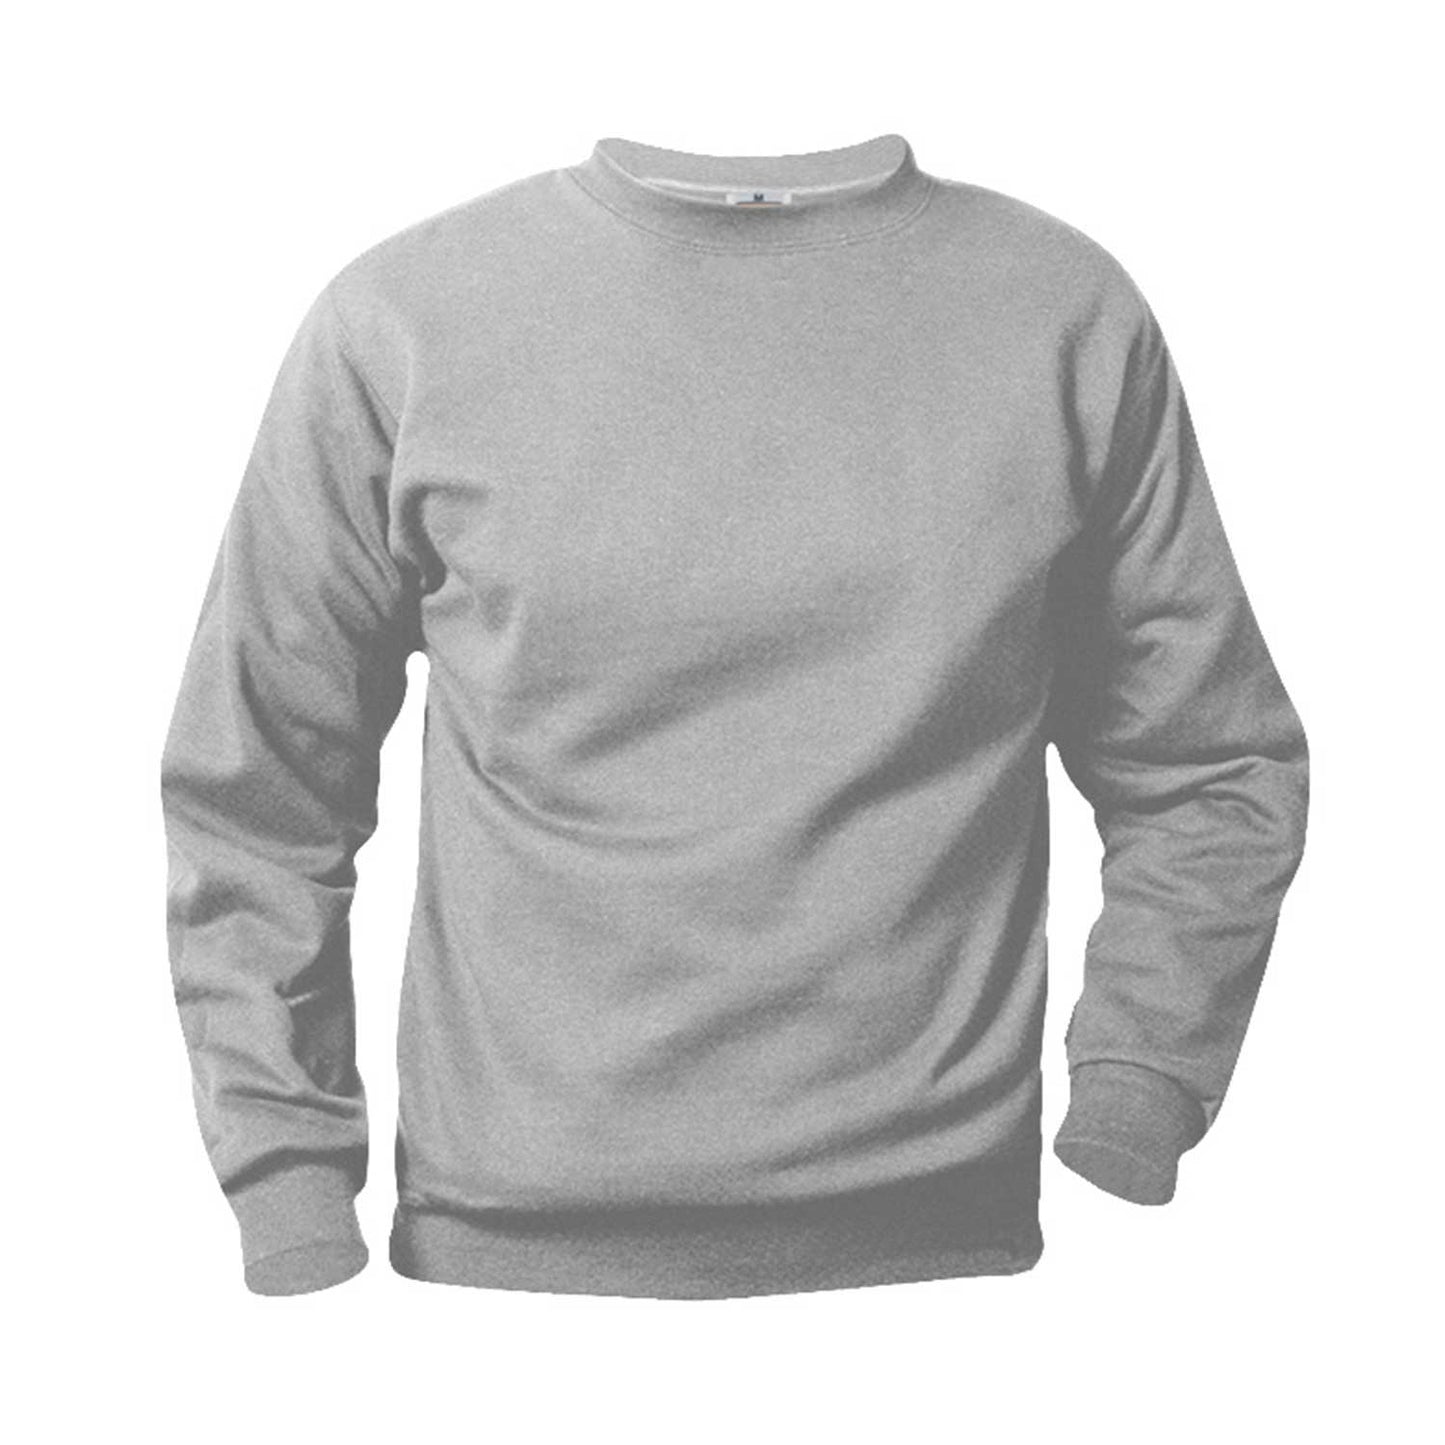 Unisex Crewneck Fleece Sweatshirt w/Logo - 1102